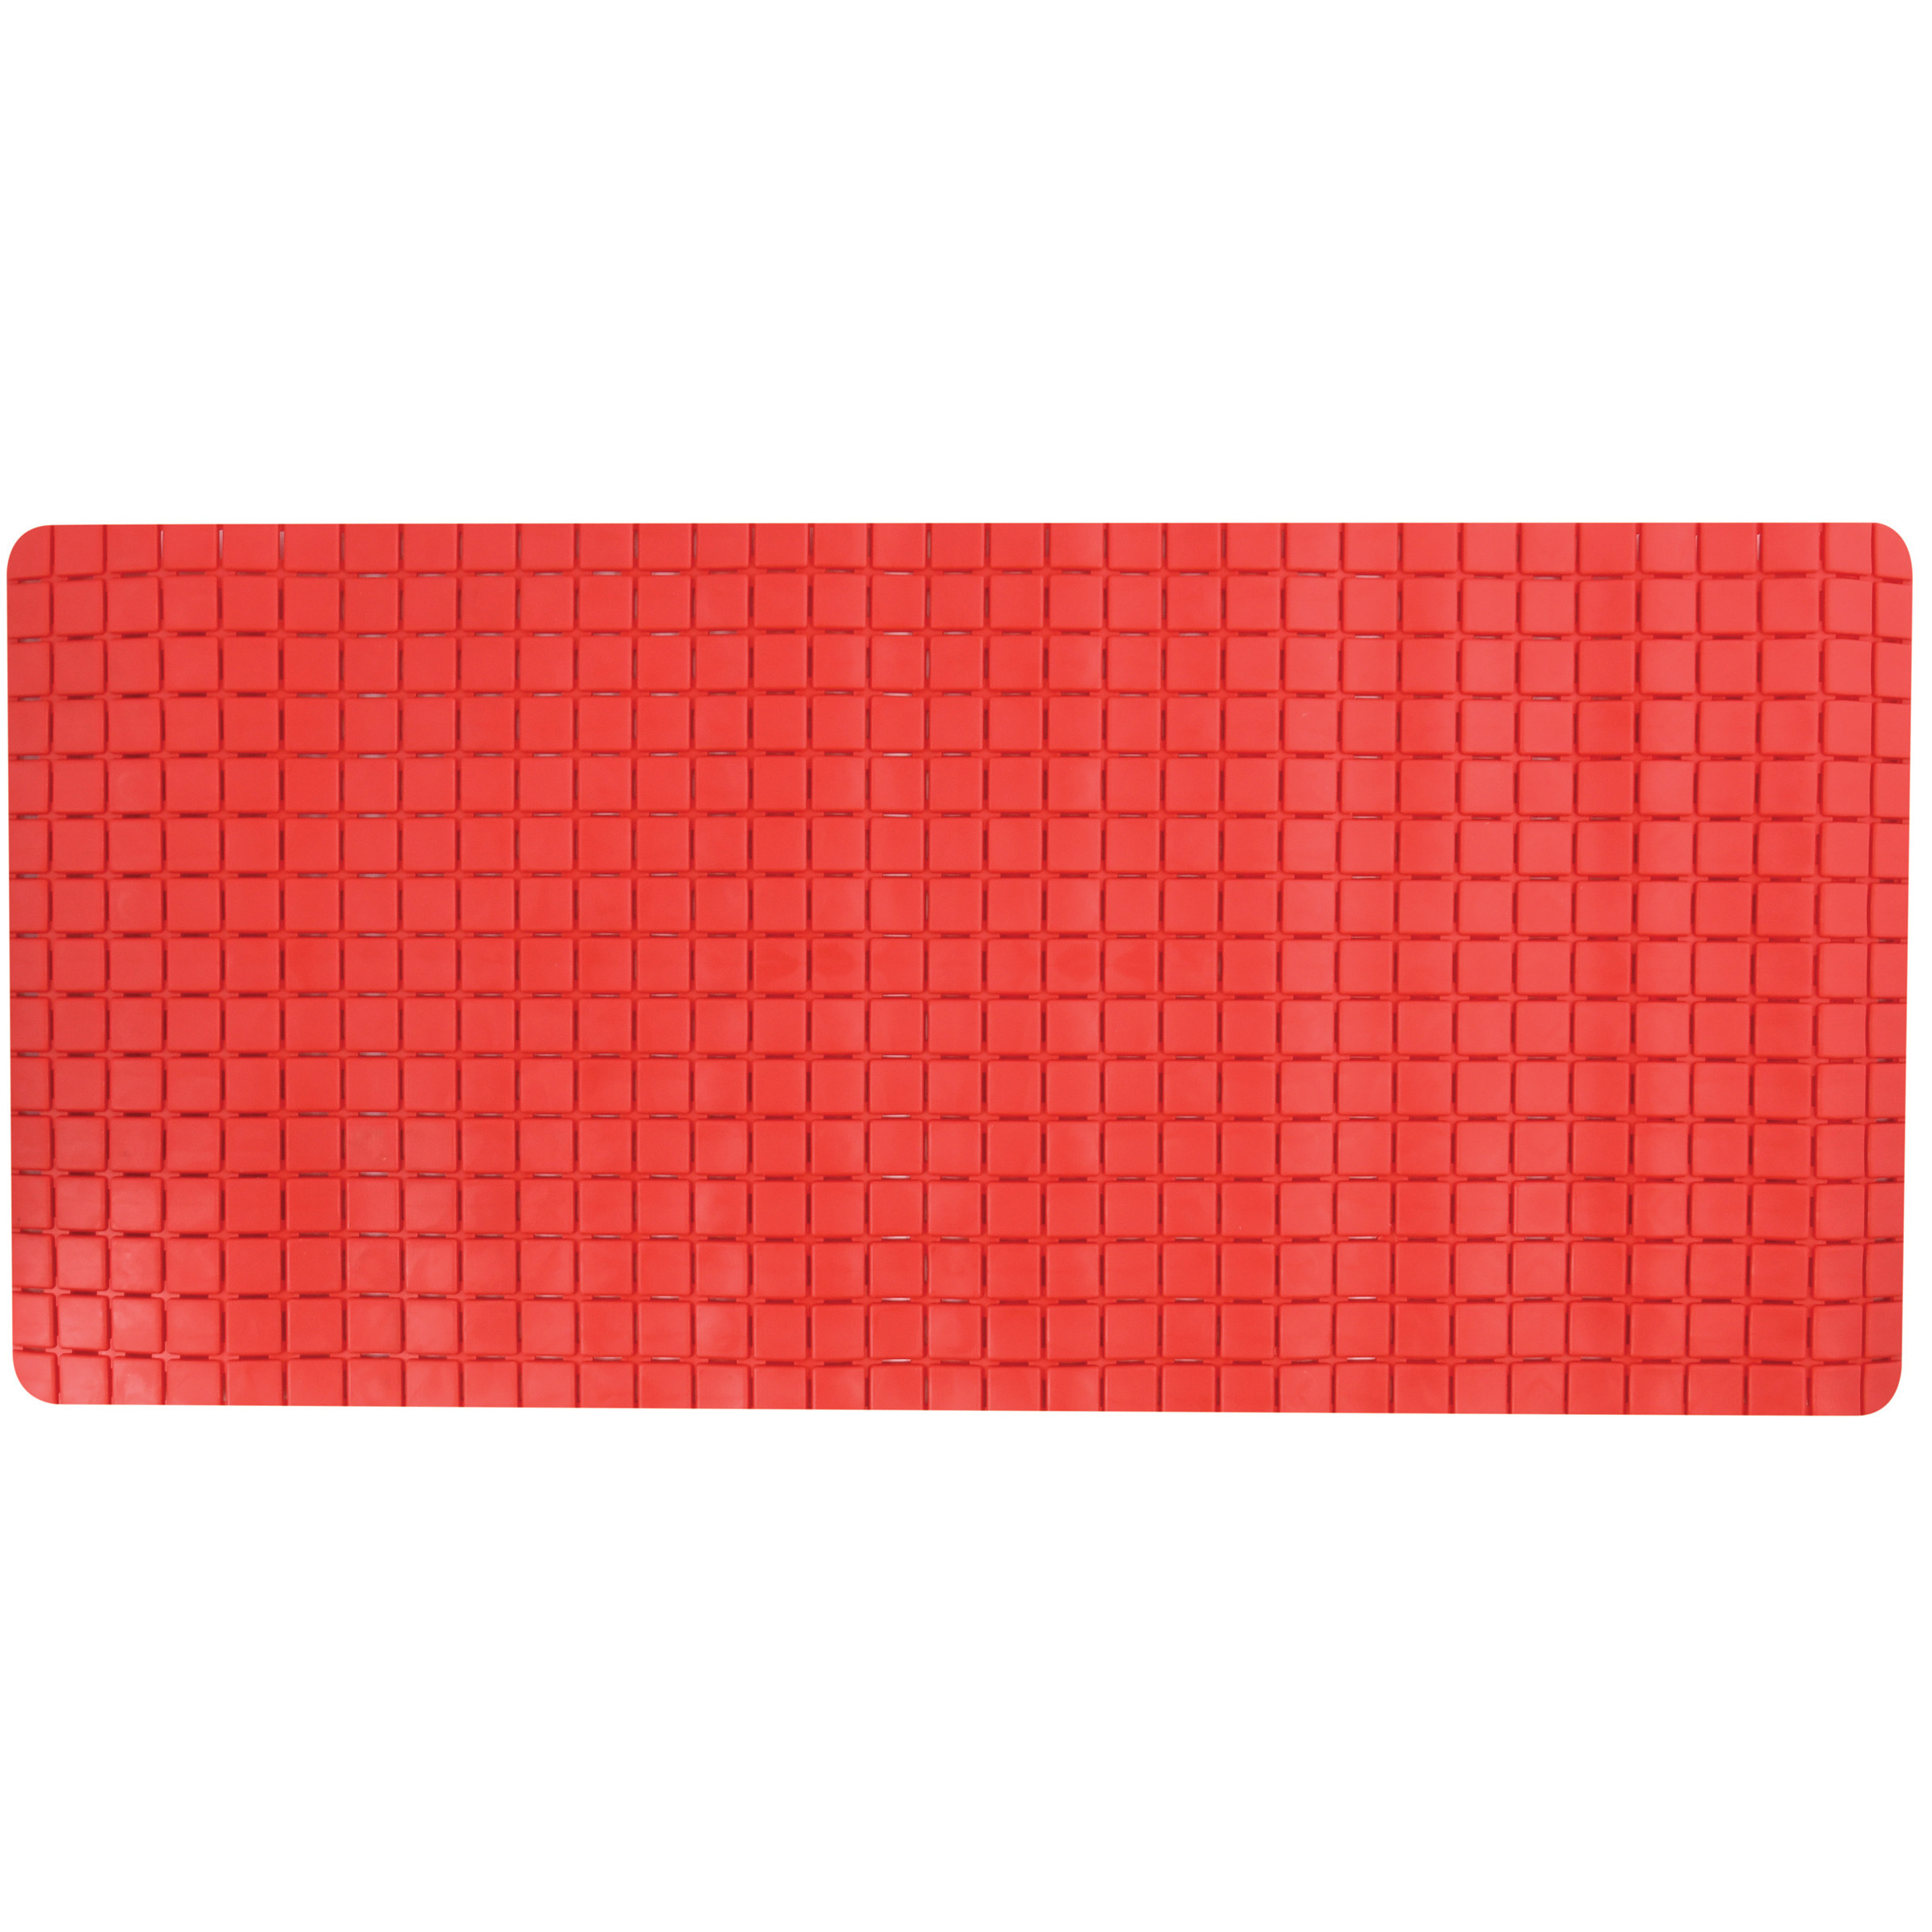 Douche-bad anti-slip mat badkamer rubber rood 76 x 36 cm rechthoek